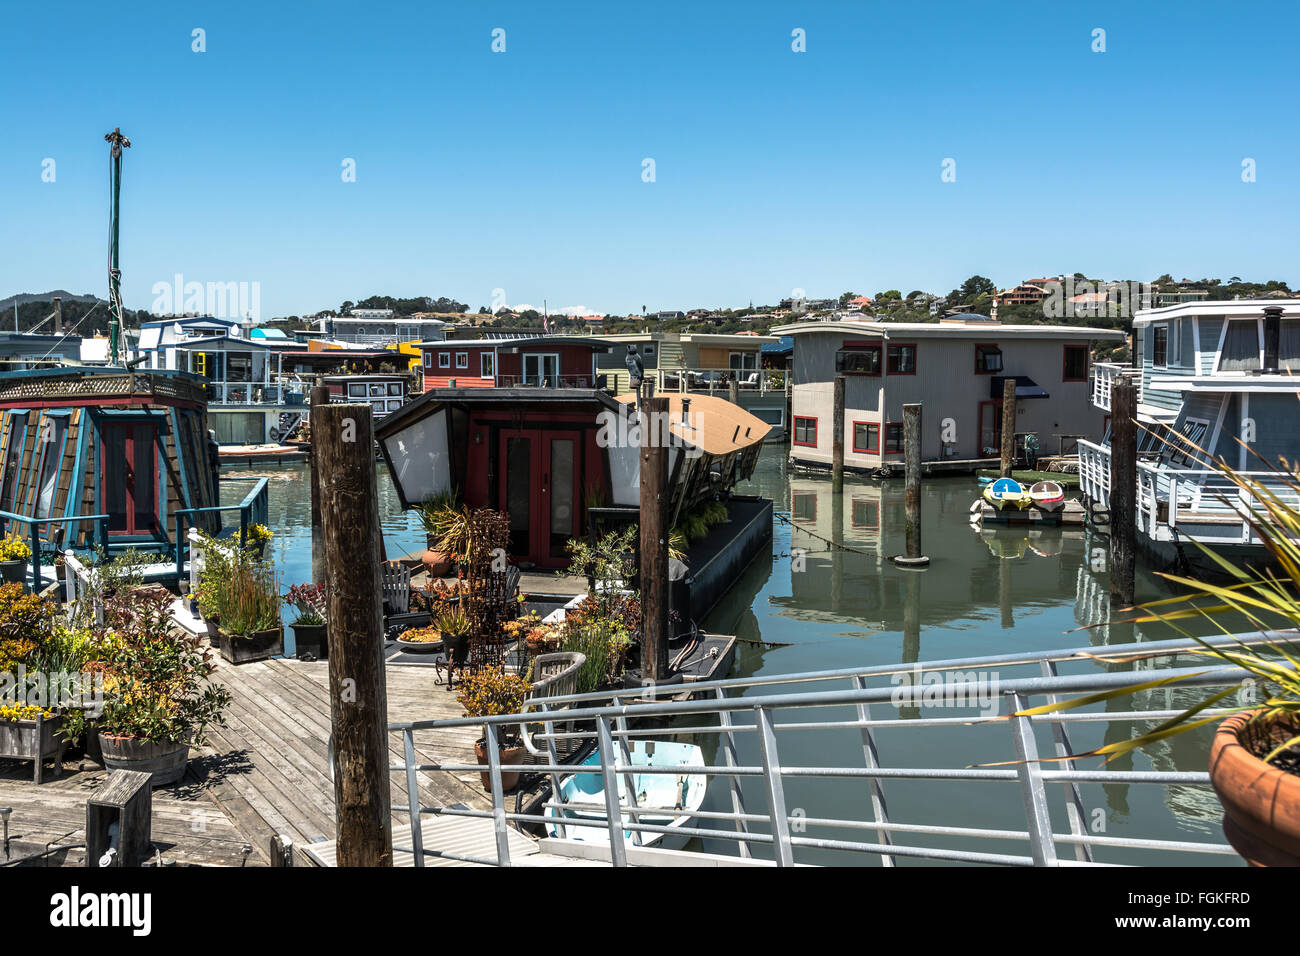 Sausalito, California,Estados Unidos - 8 de junio de 2015 - Casas Flotantes en Sausalito Foto de stock